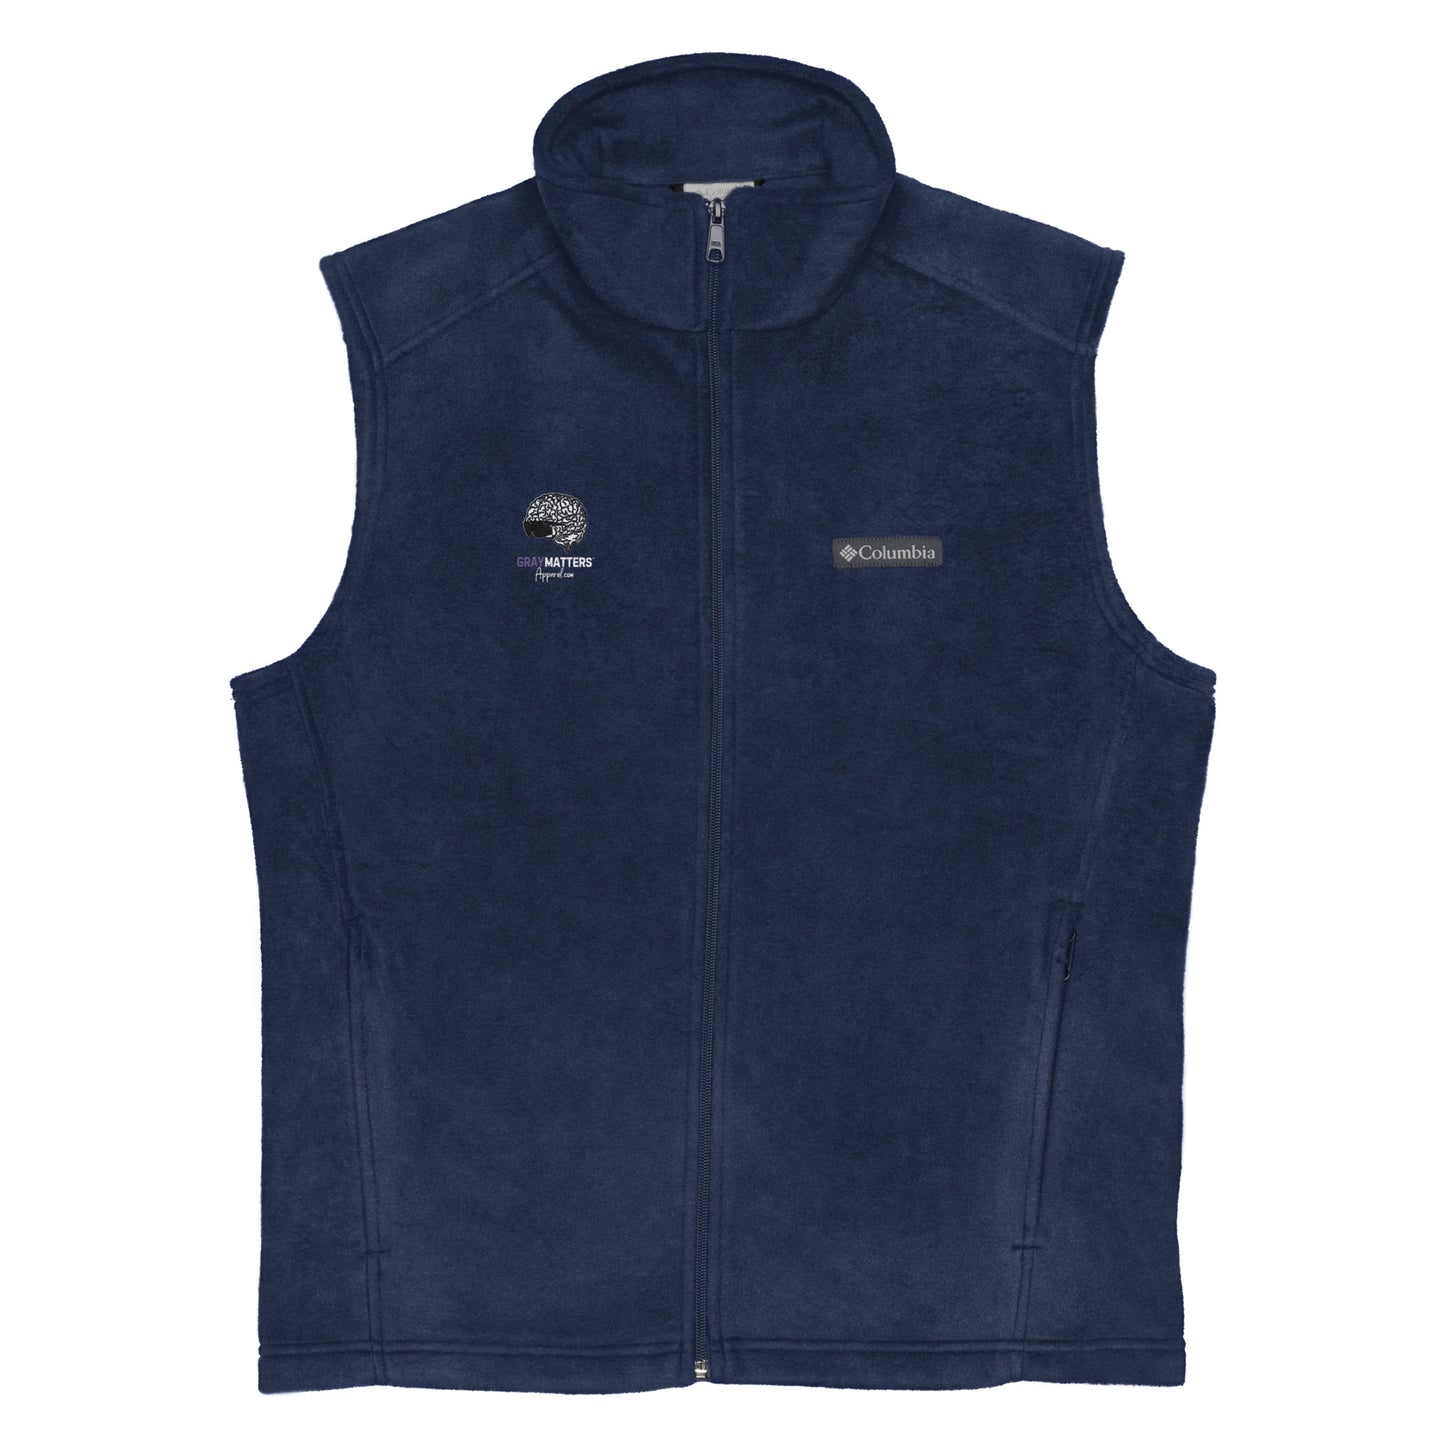 Men’s Columbia Fleece Vest with Logo